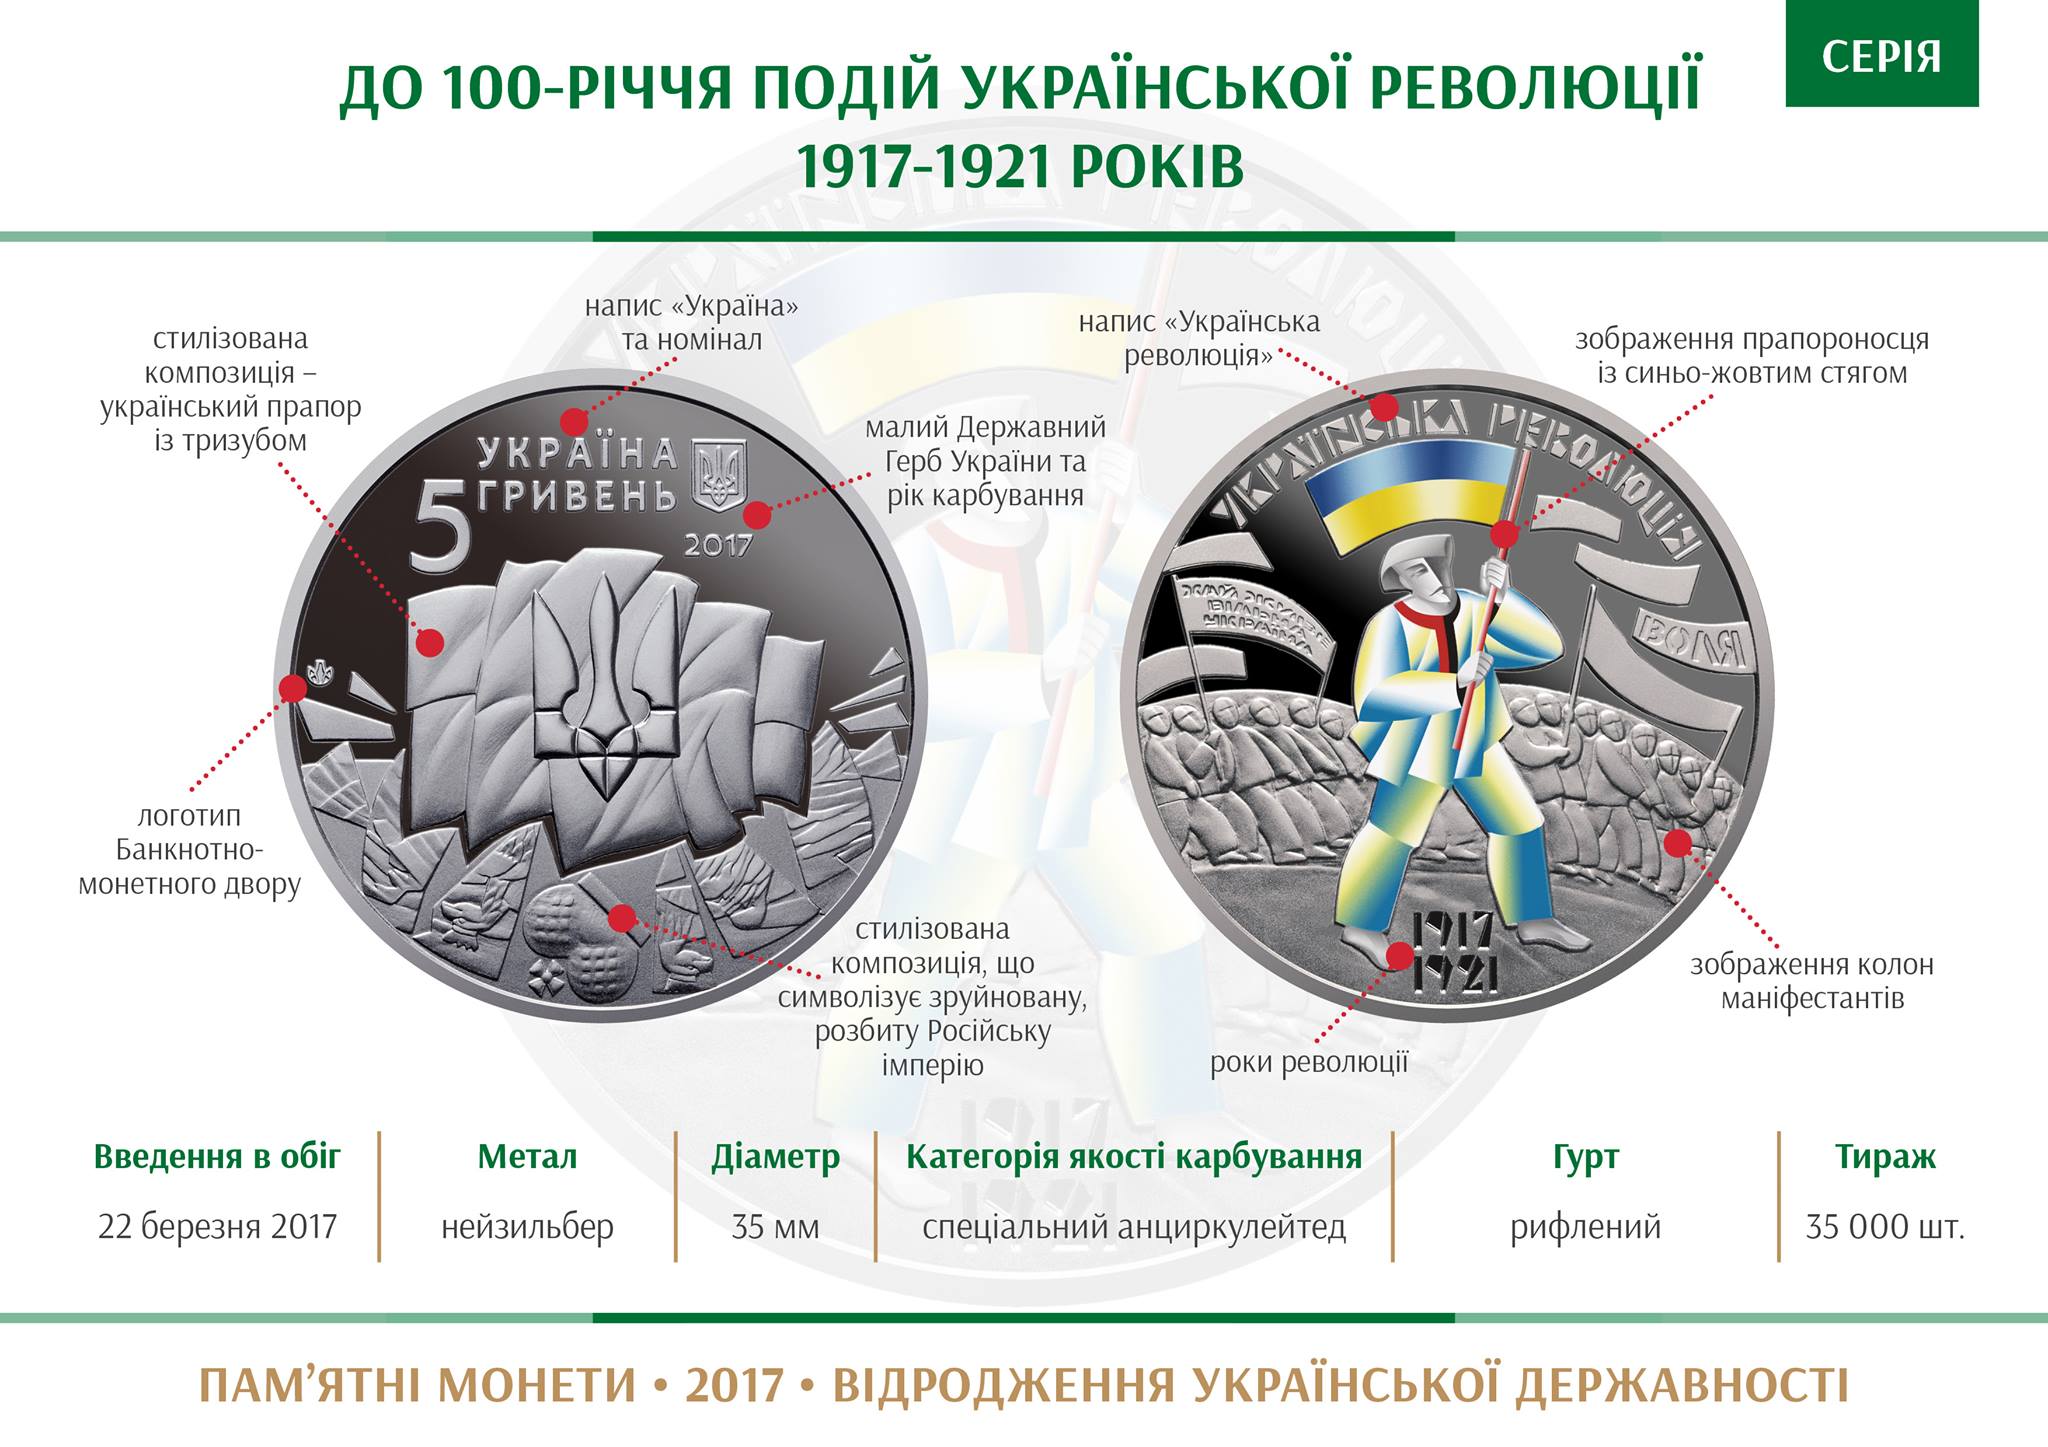 НБУ выпустил монету «К 100-летию Украинской революции» - 1 - изображение